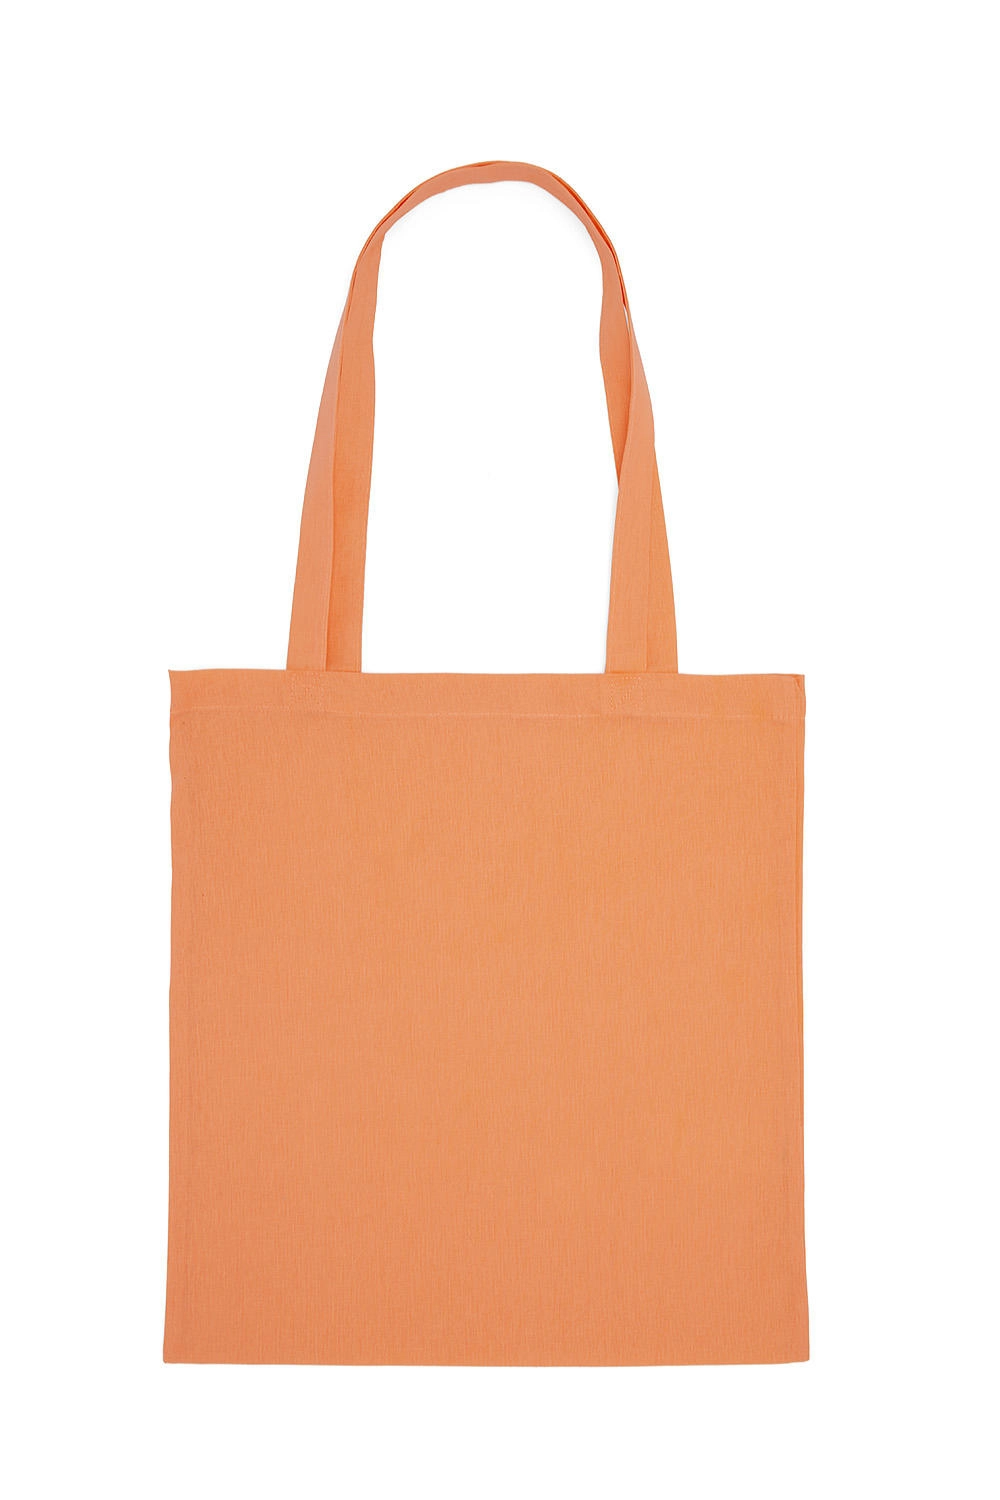 Cotton Bag LH zum Besticken und Bedrucken in der Farbe Cantaloupe mit Ihren Logo, Schriftzug oder Motiv.